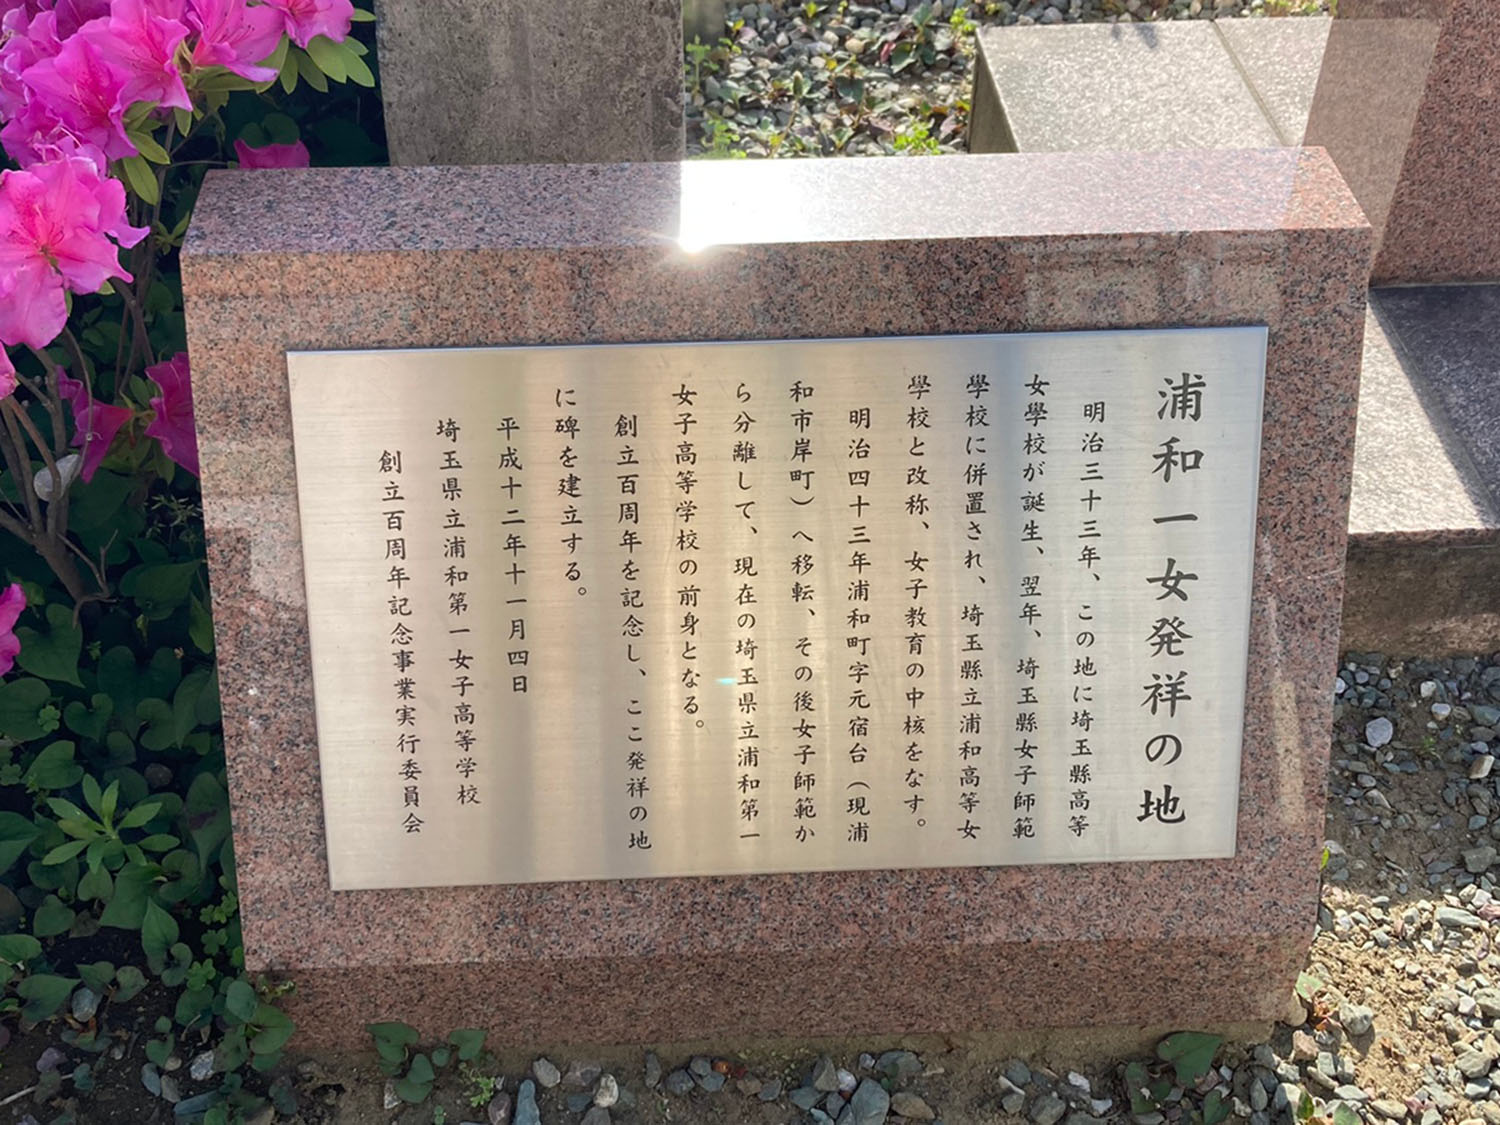 浦和第一女子高等学校の前身、埼玉縣高等女學校が設立されたのがこの地とのこと。